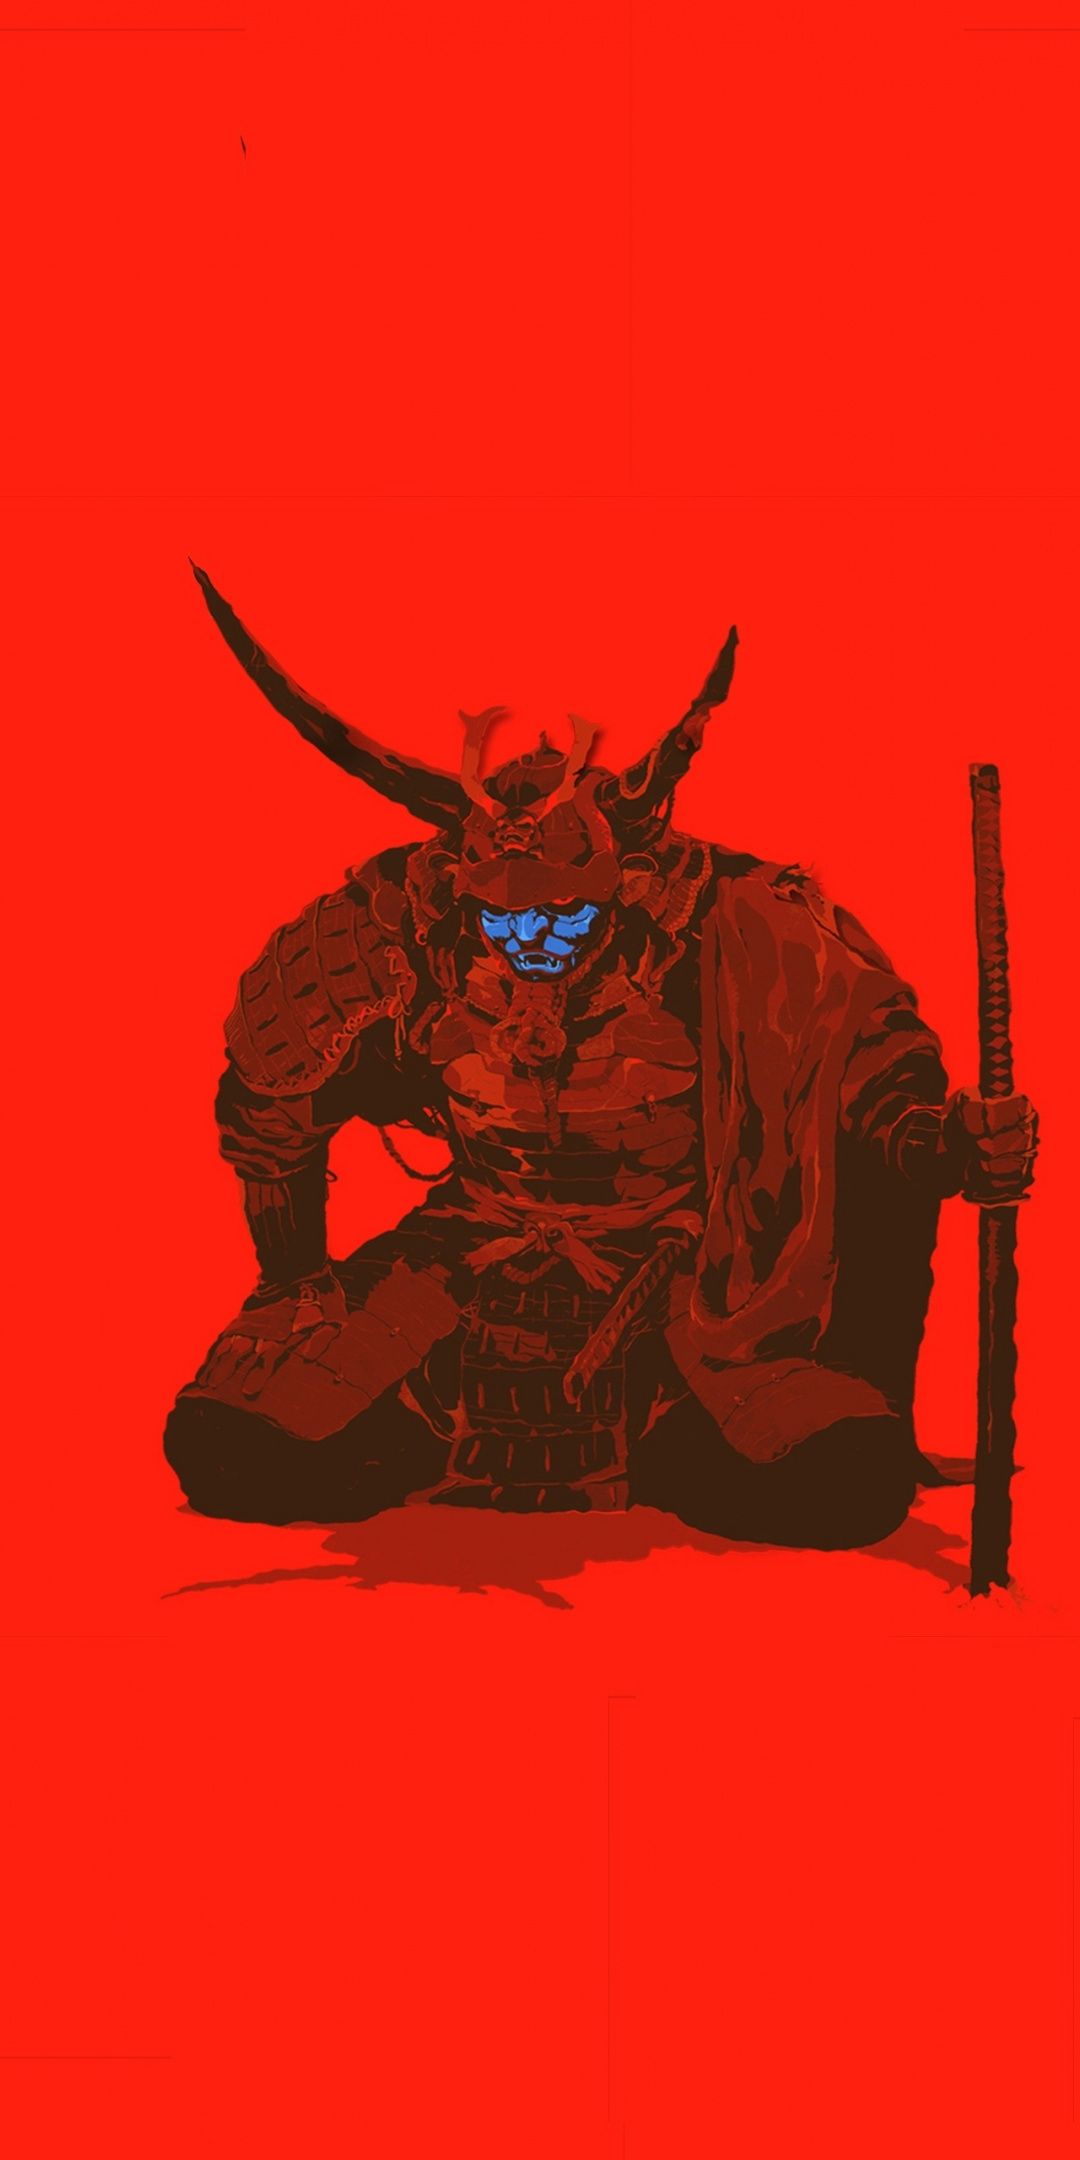 Samurai, warrior, minimal, art, 1080x2160 wallpaper. Pop art